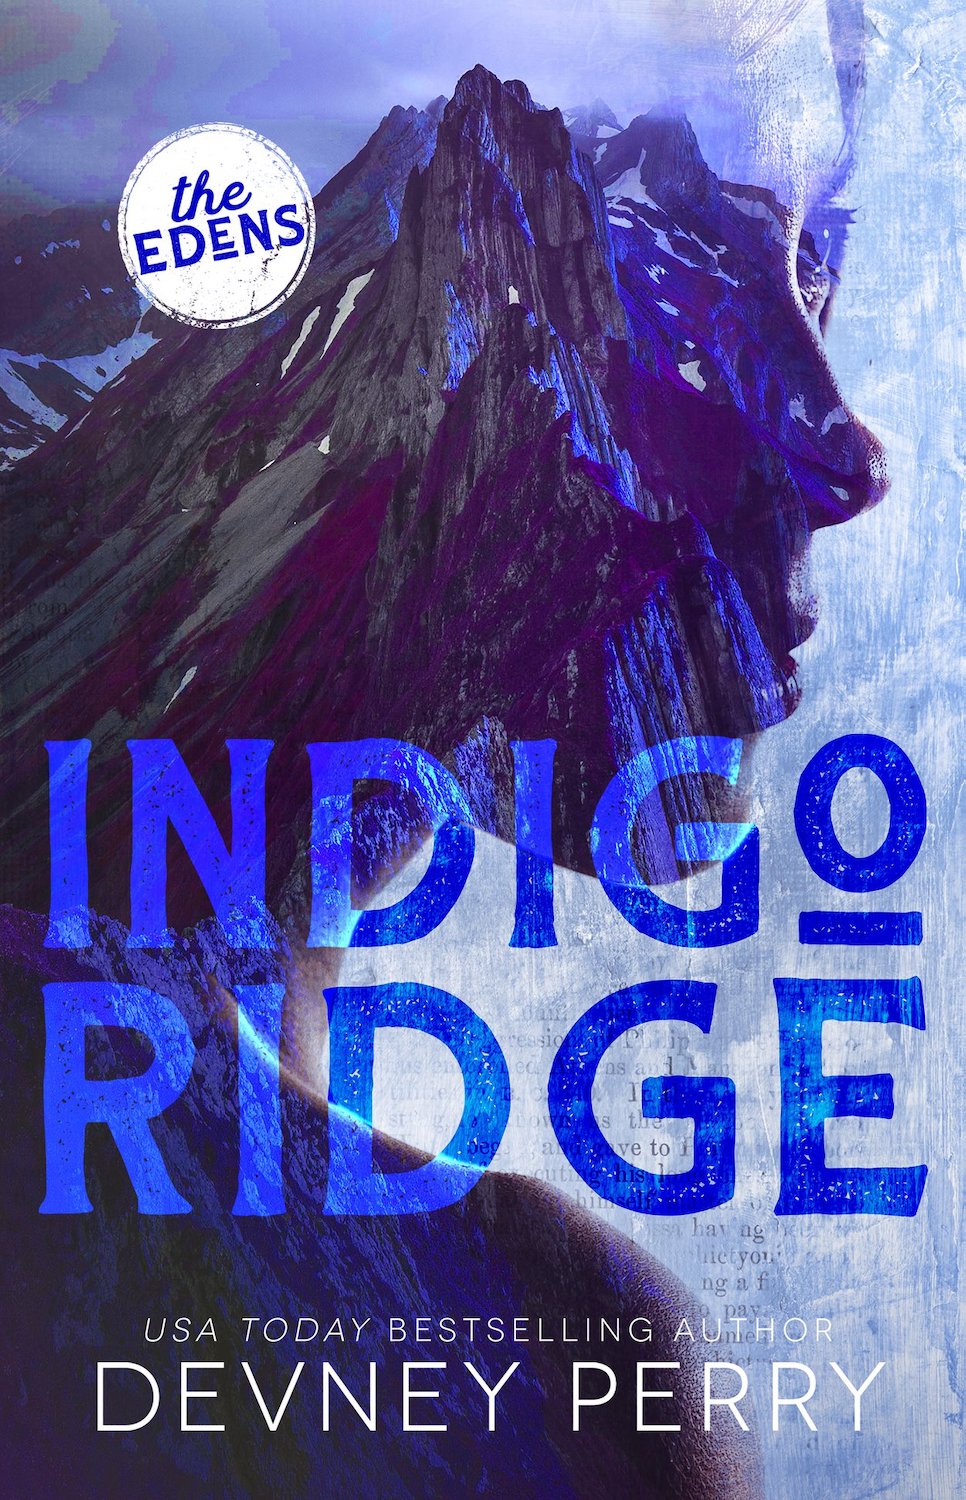 Indigo Ridge - Devney Perry